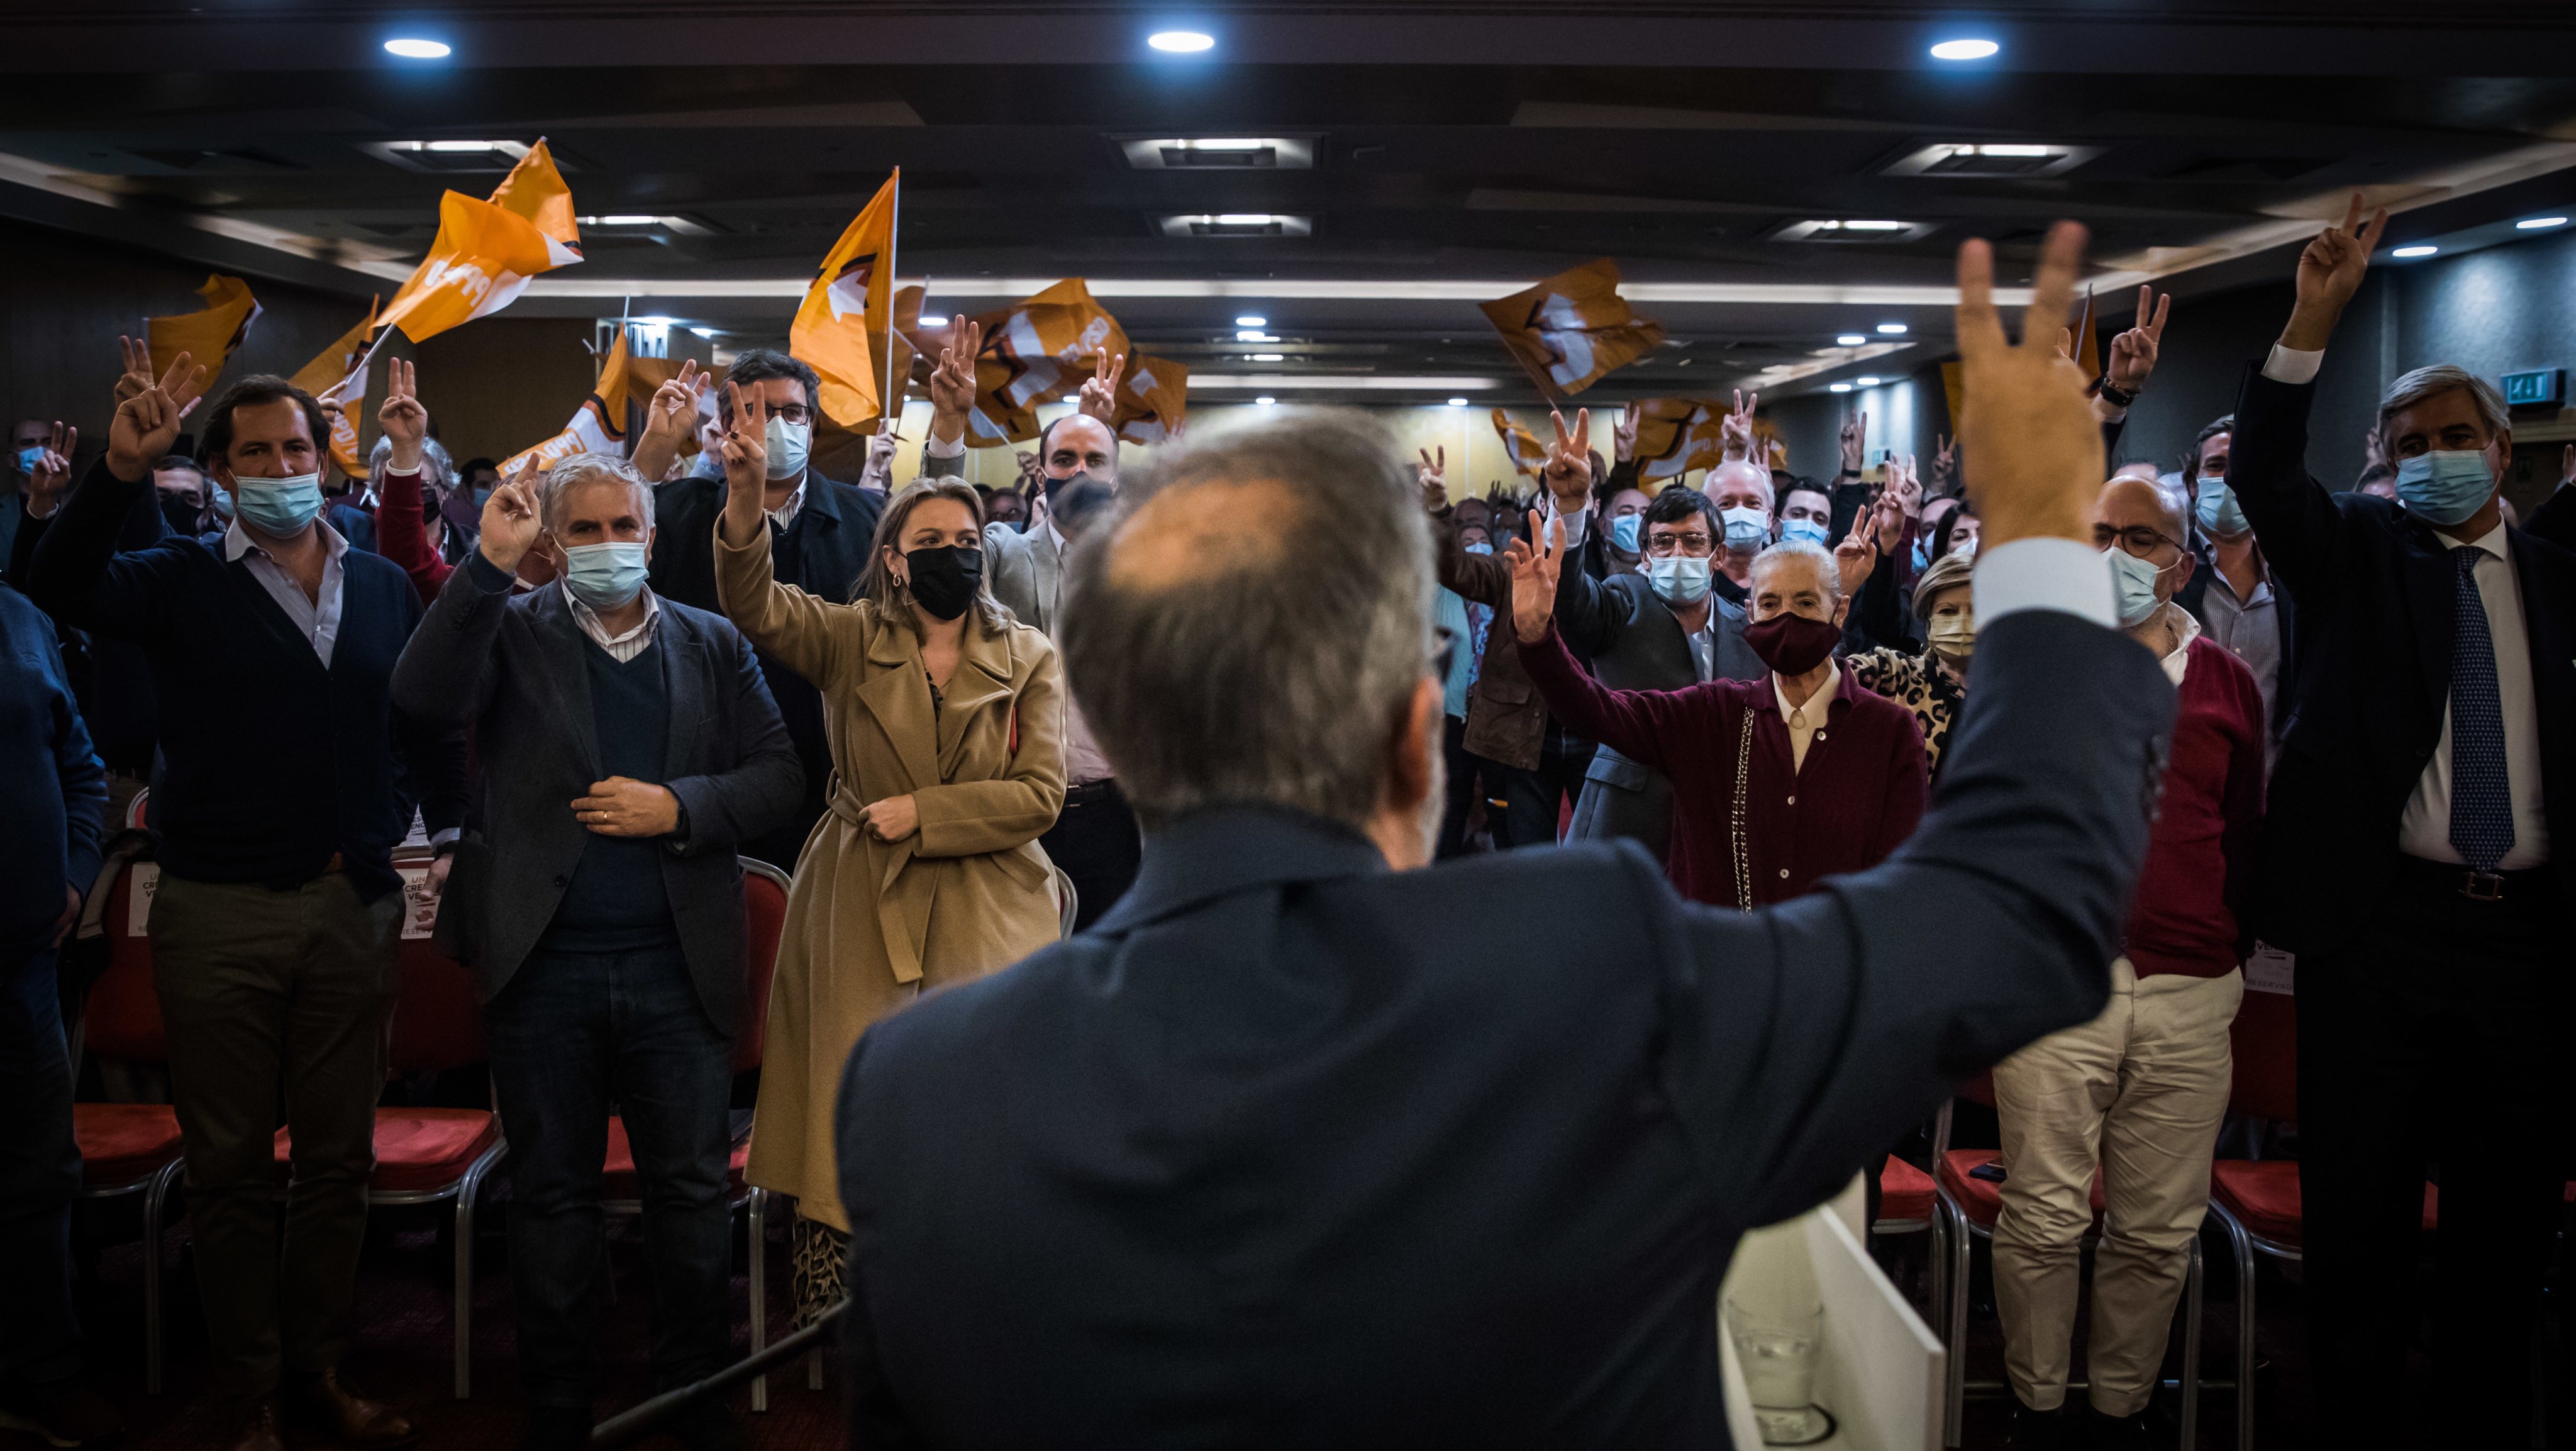 Convício com militantes em Lisboa, numa ação de campanha de Paulo Rangel para as eleições internas que se disputam a presidência do Partido Social Democrata - PSD. Lisboa, 24 de novembro de 2021. JOÃO PORFÍRIO/OBSERVADOR